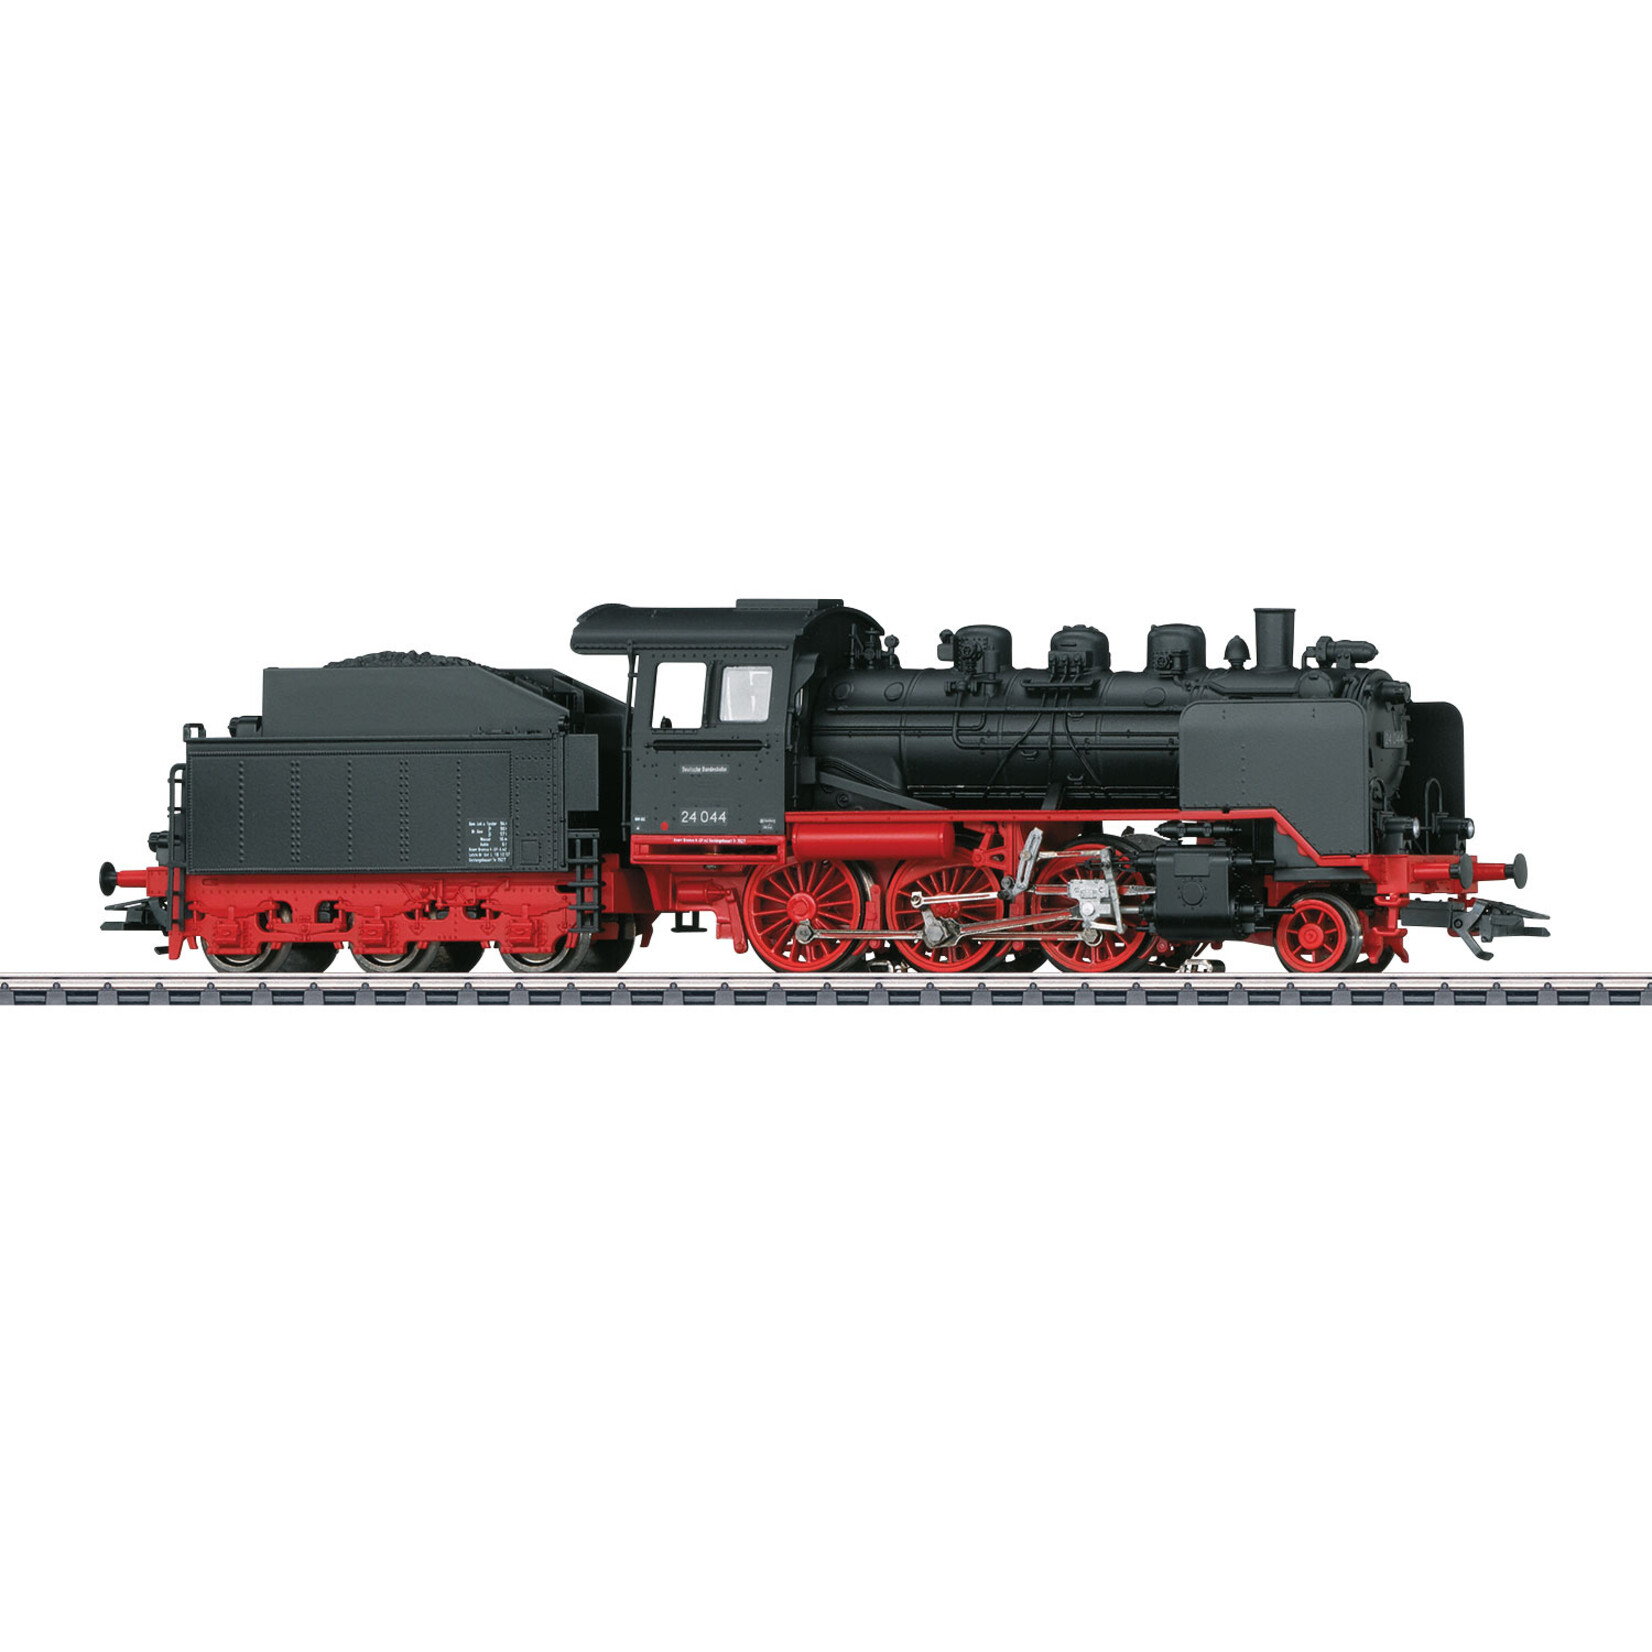 Märklin Märklin Classics 36244 DB Class 24 Steam Locomotive with Tender, Era III